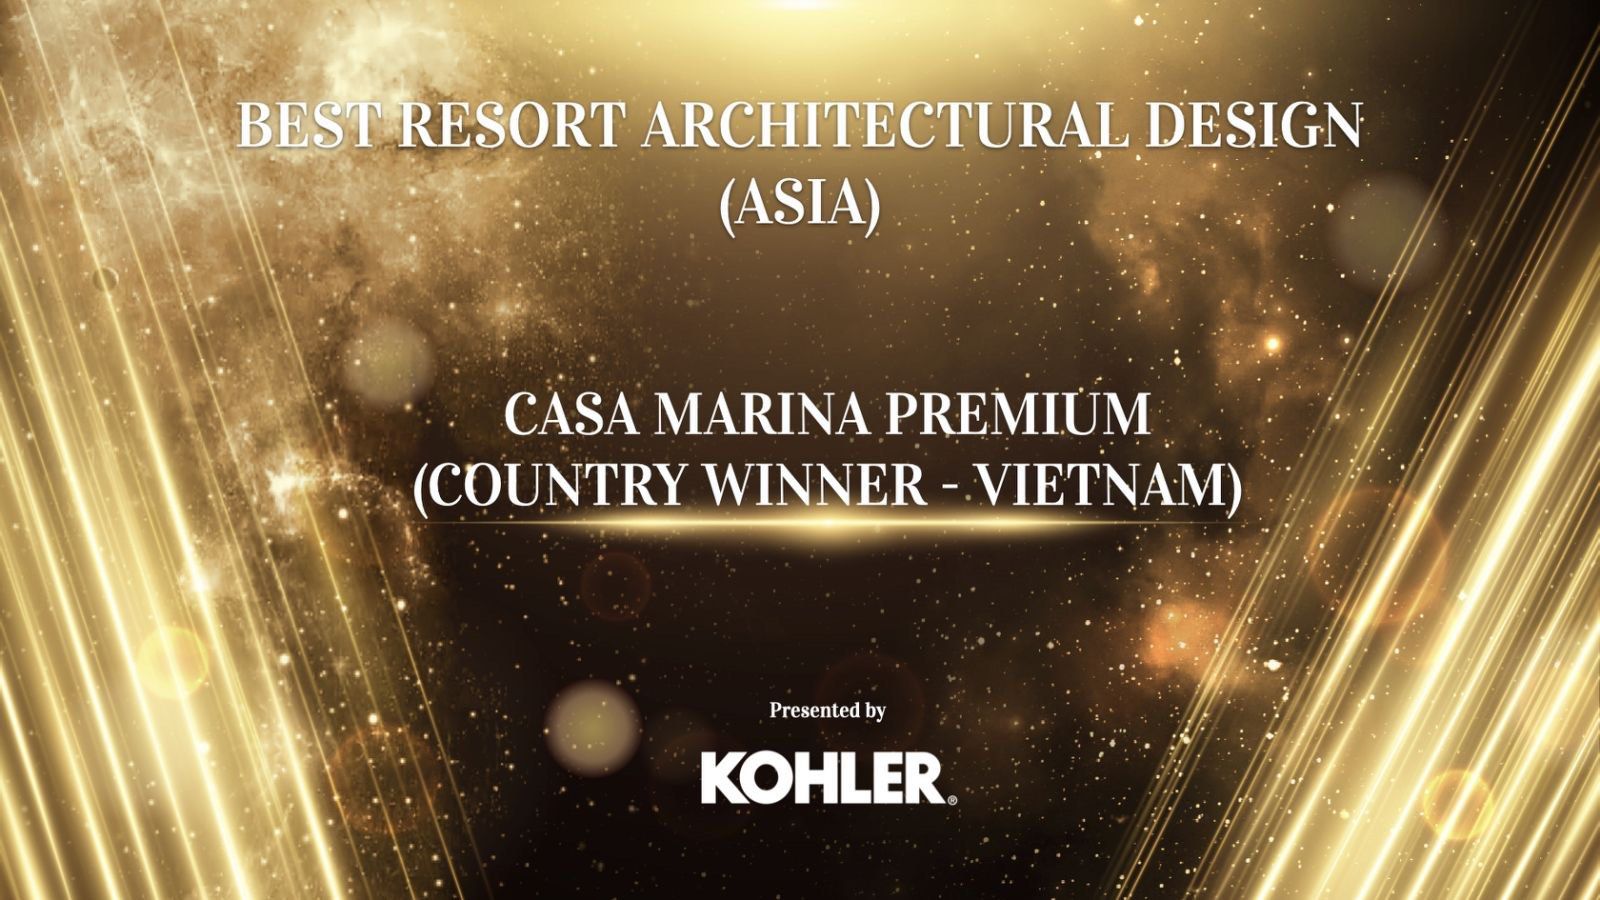 CASA MARINA PREMIUM TỰ HÀO ĐƯỢC XƯỚNG DANH “BEST RESORT ARCHITECTURAL DESIGN IN VIETNAM” TẠI GIẢI THƯỞNG PROPERTYGURU ASIA PROPERTY AWARDS 2021